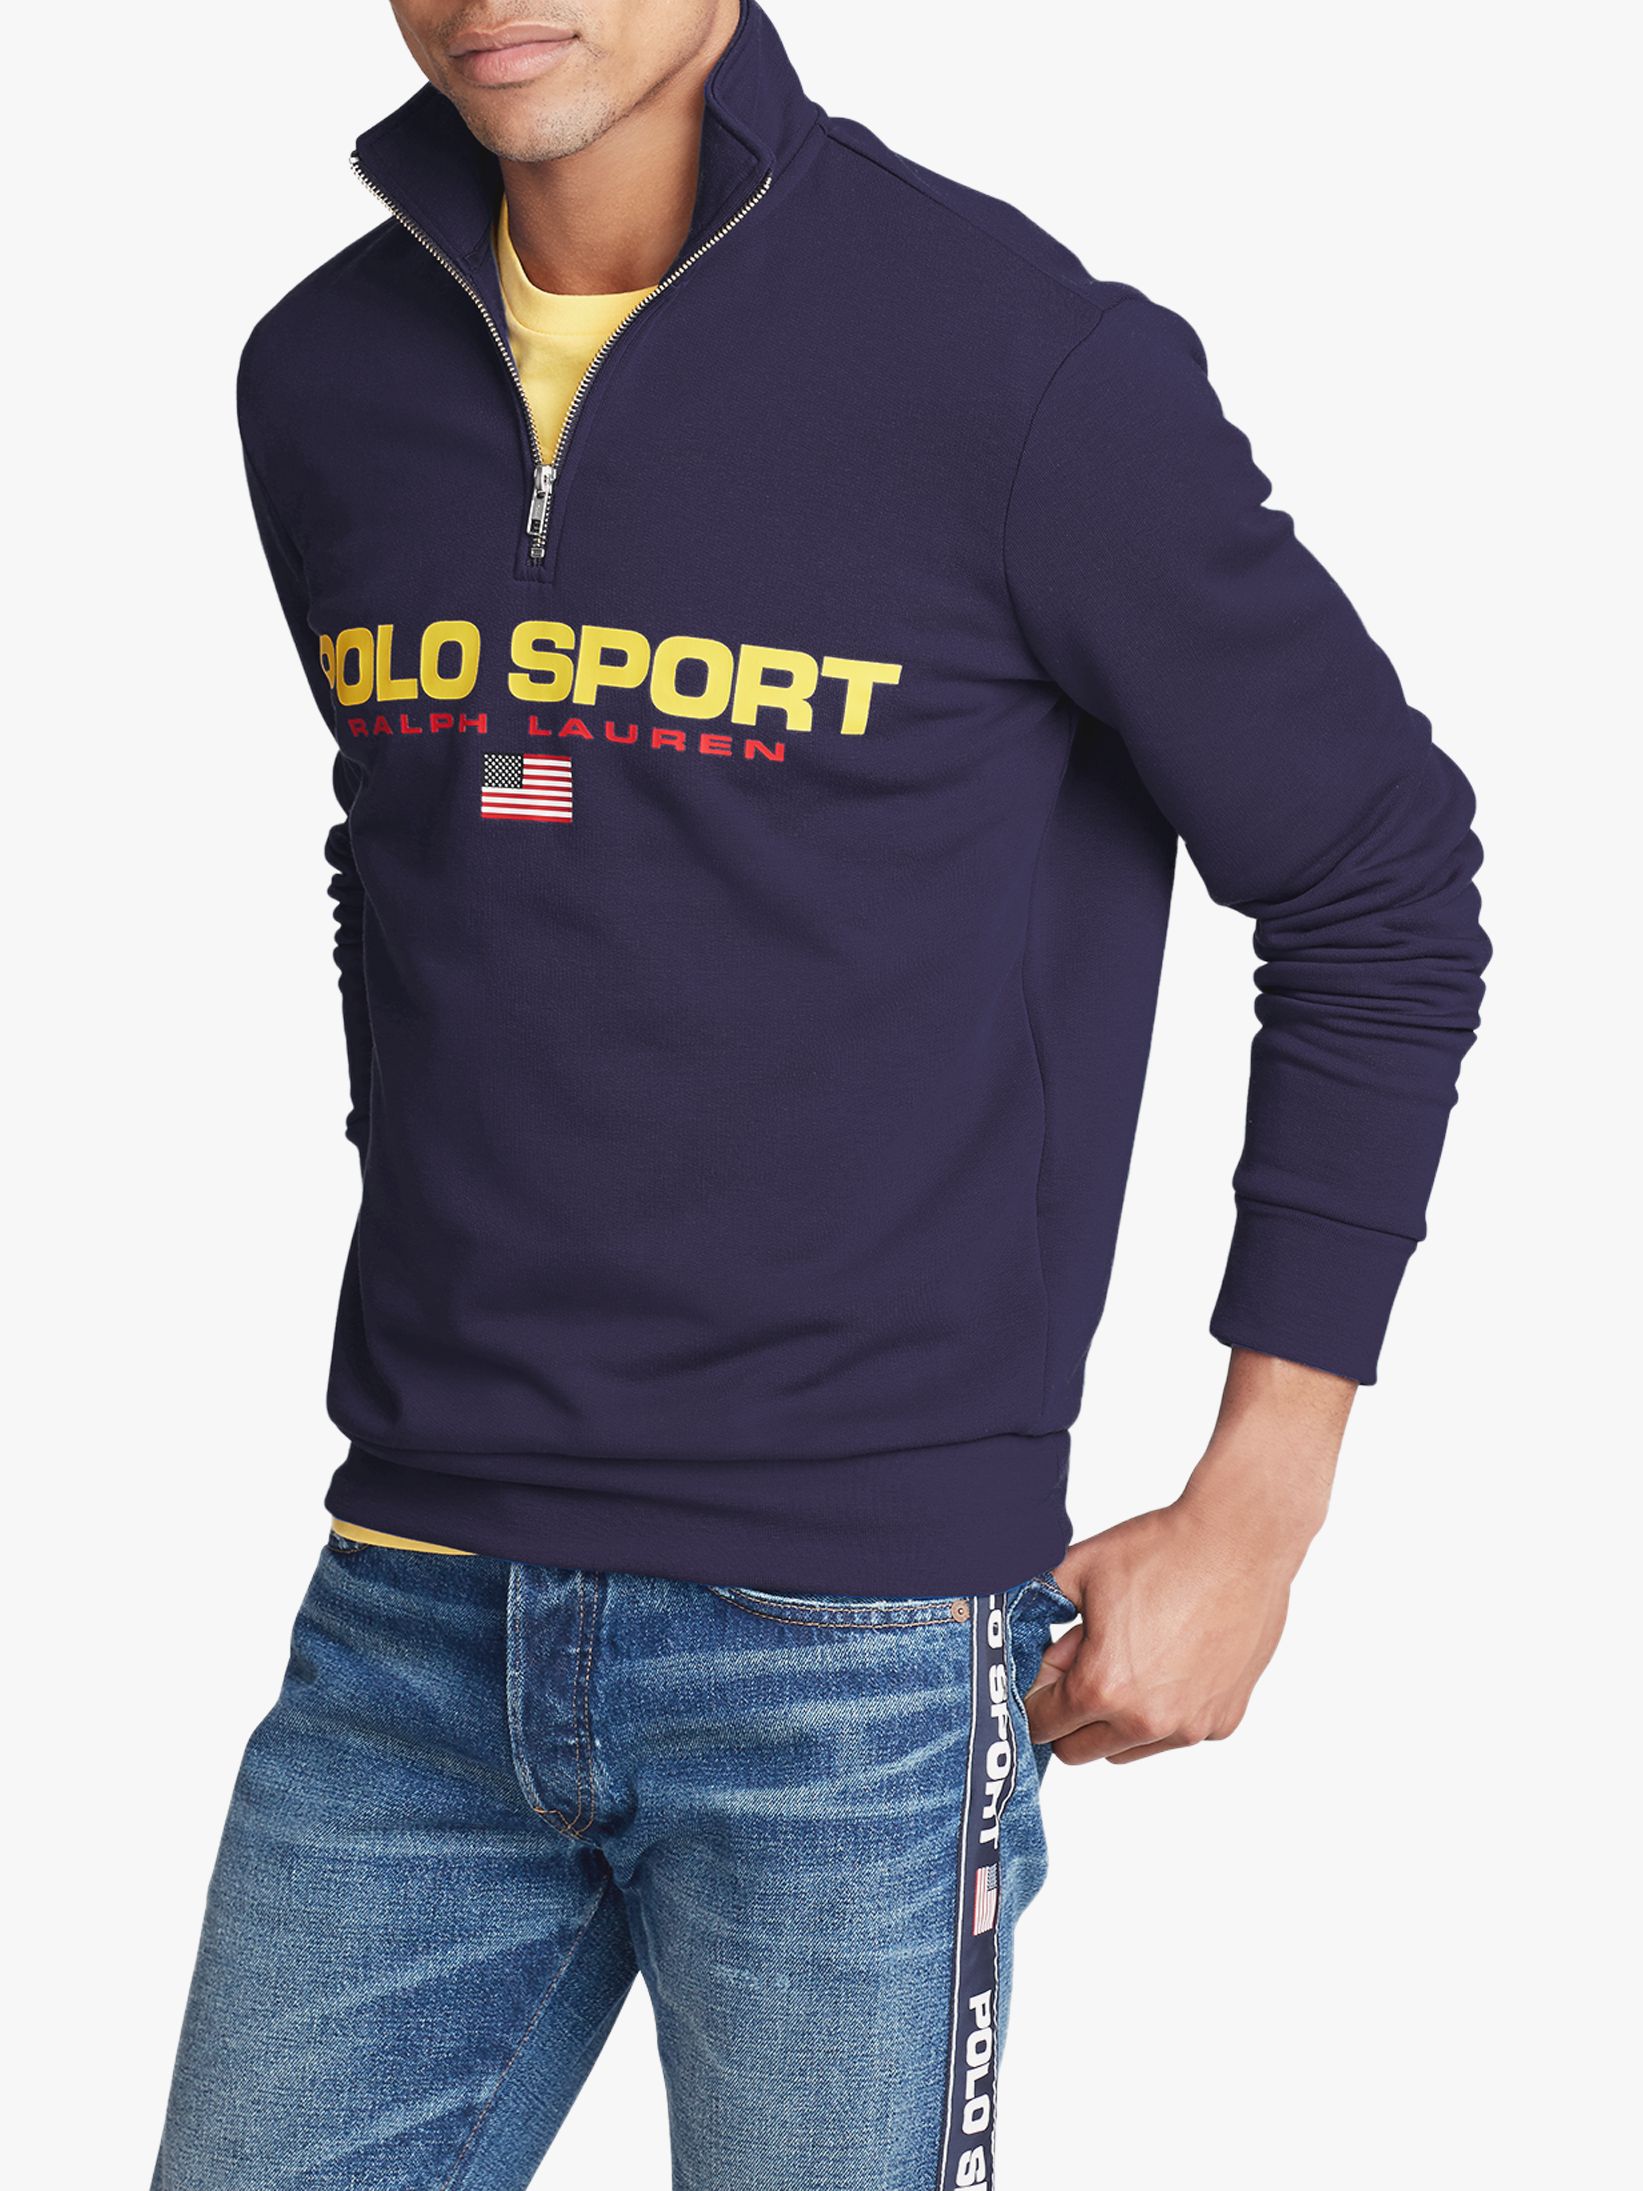 Polo Ralph Lauren Polo Sport Half Zip Sweatshirt